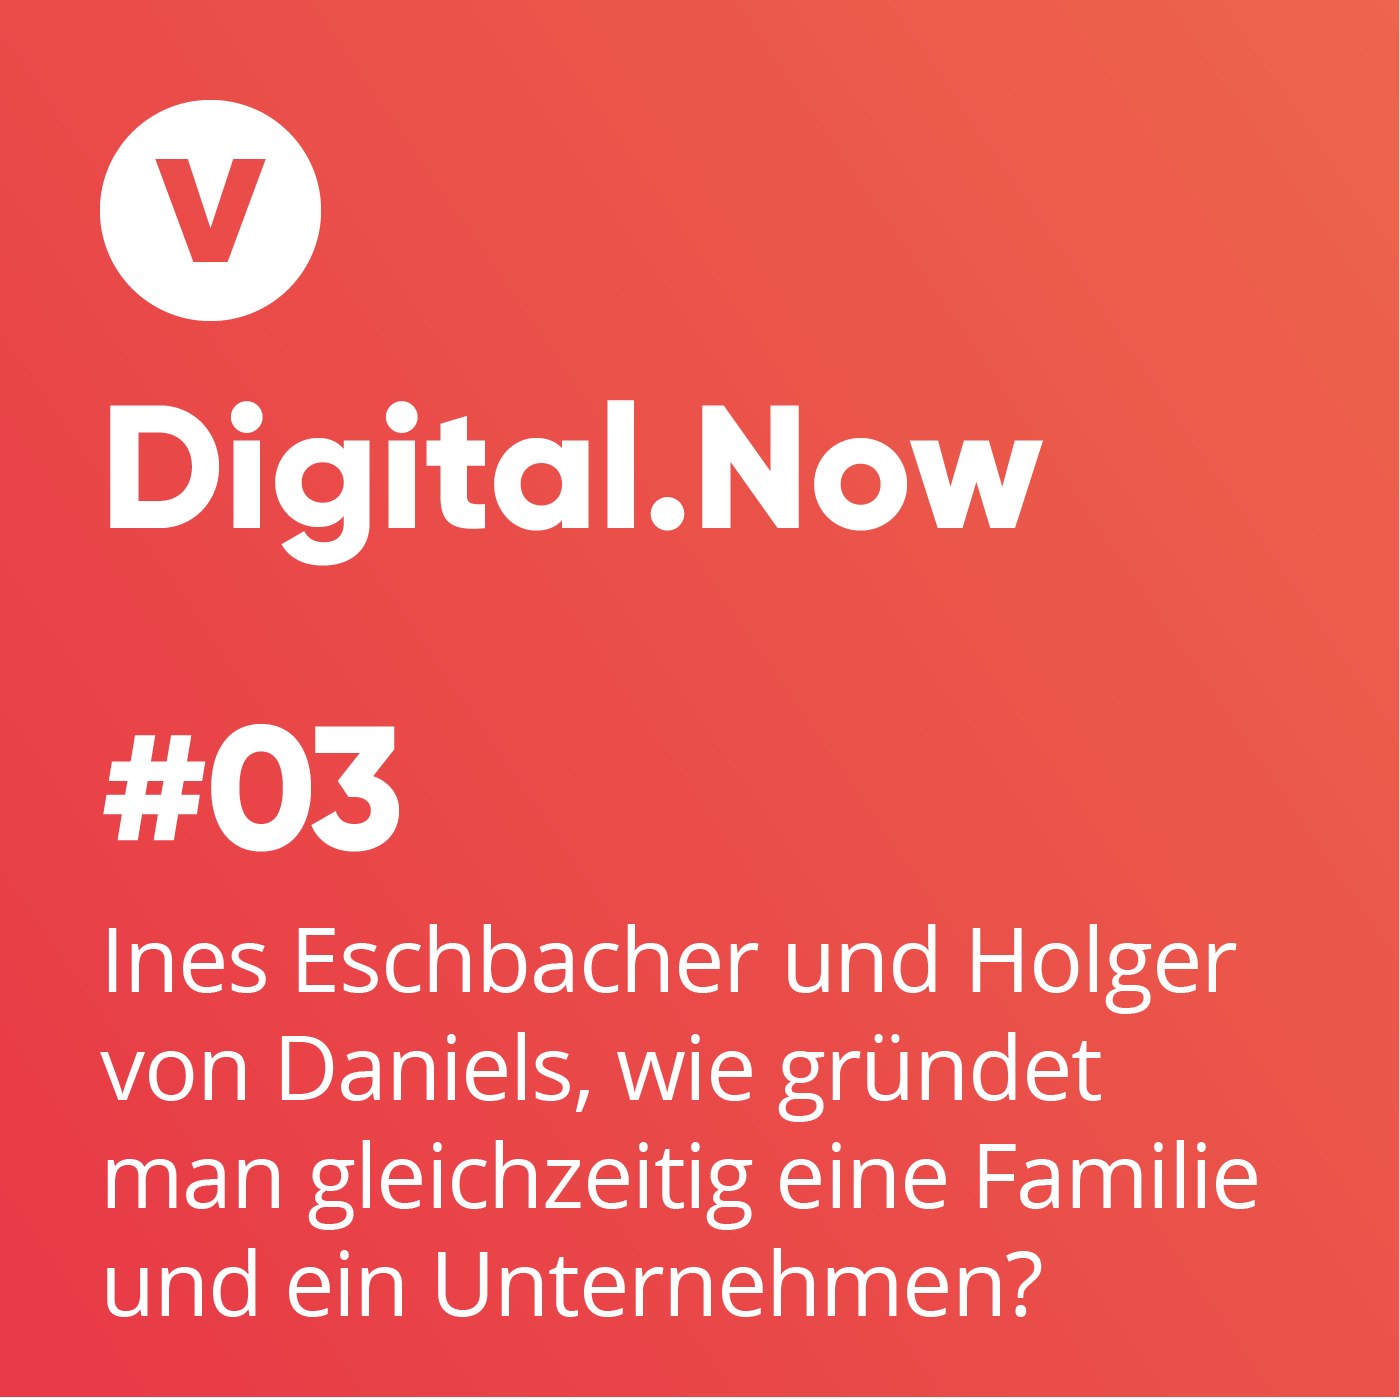 Ines Eschbacher und Holger von Daniels, wie gründet man gleichzeitig eine Familie und ein Unternehmen?